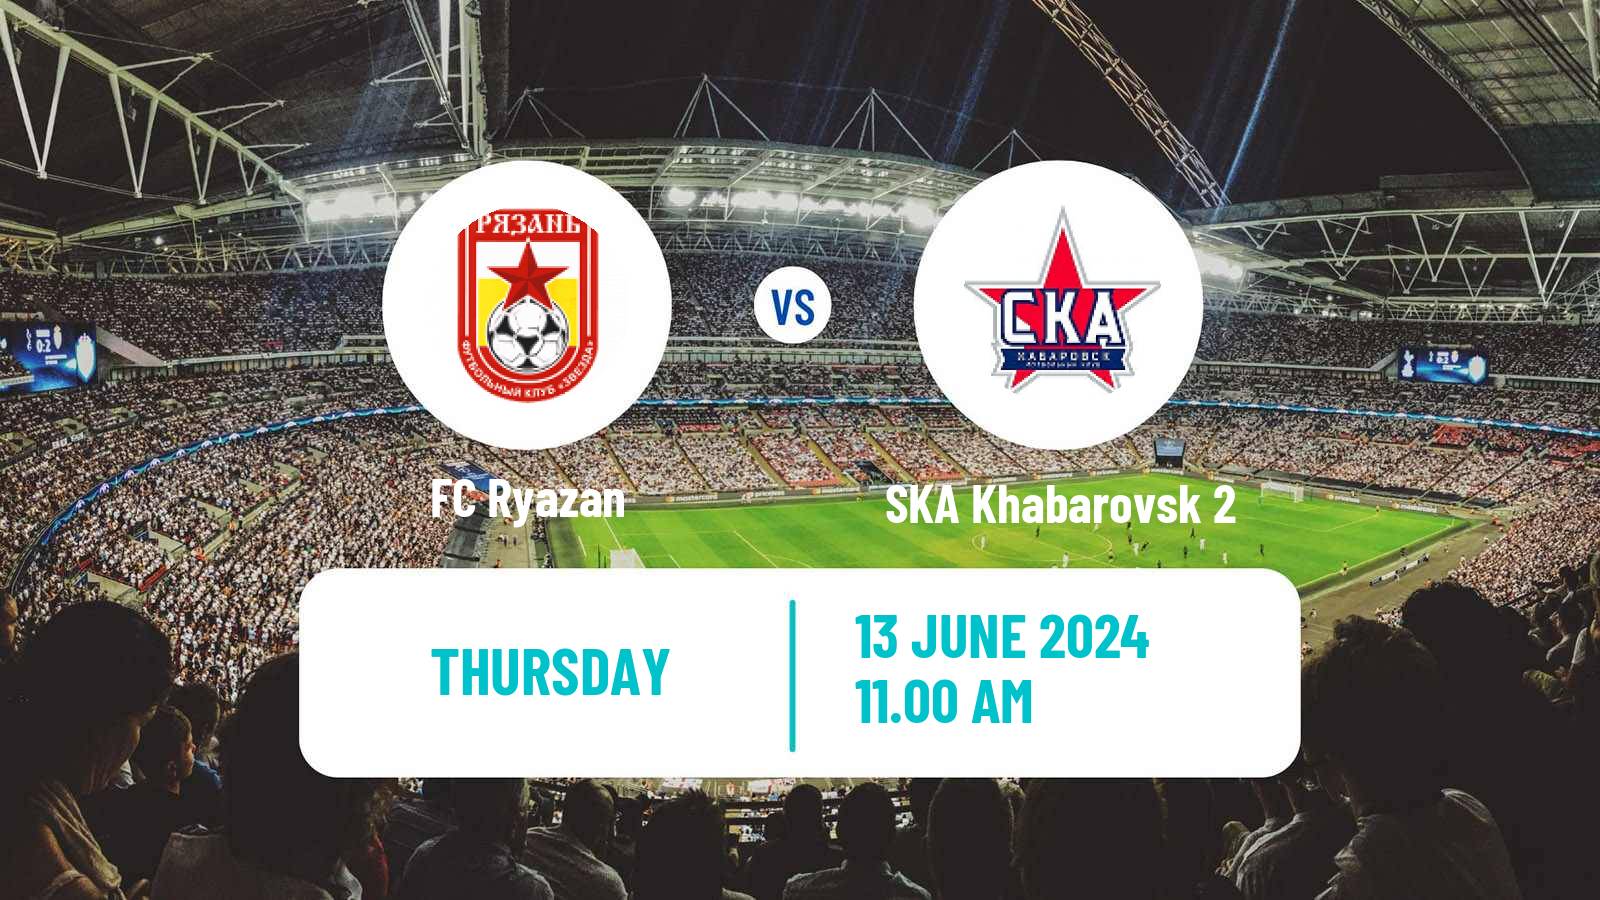 Soccer FNL 2 Division B Group 3 Ryazan - SKA Khabarovsk 2